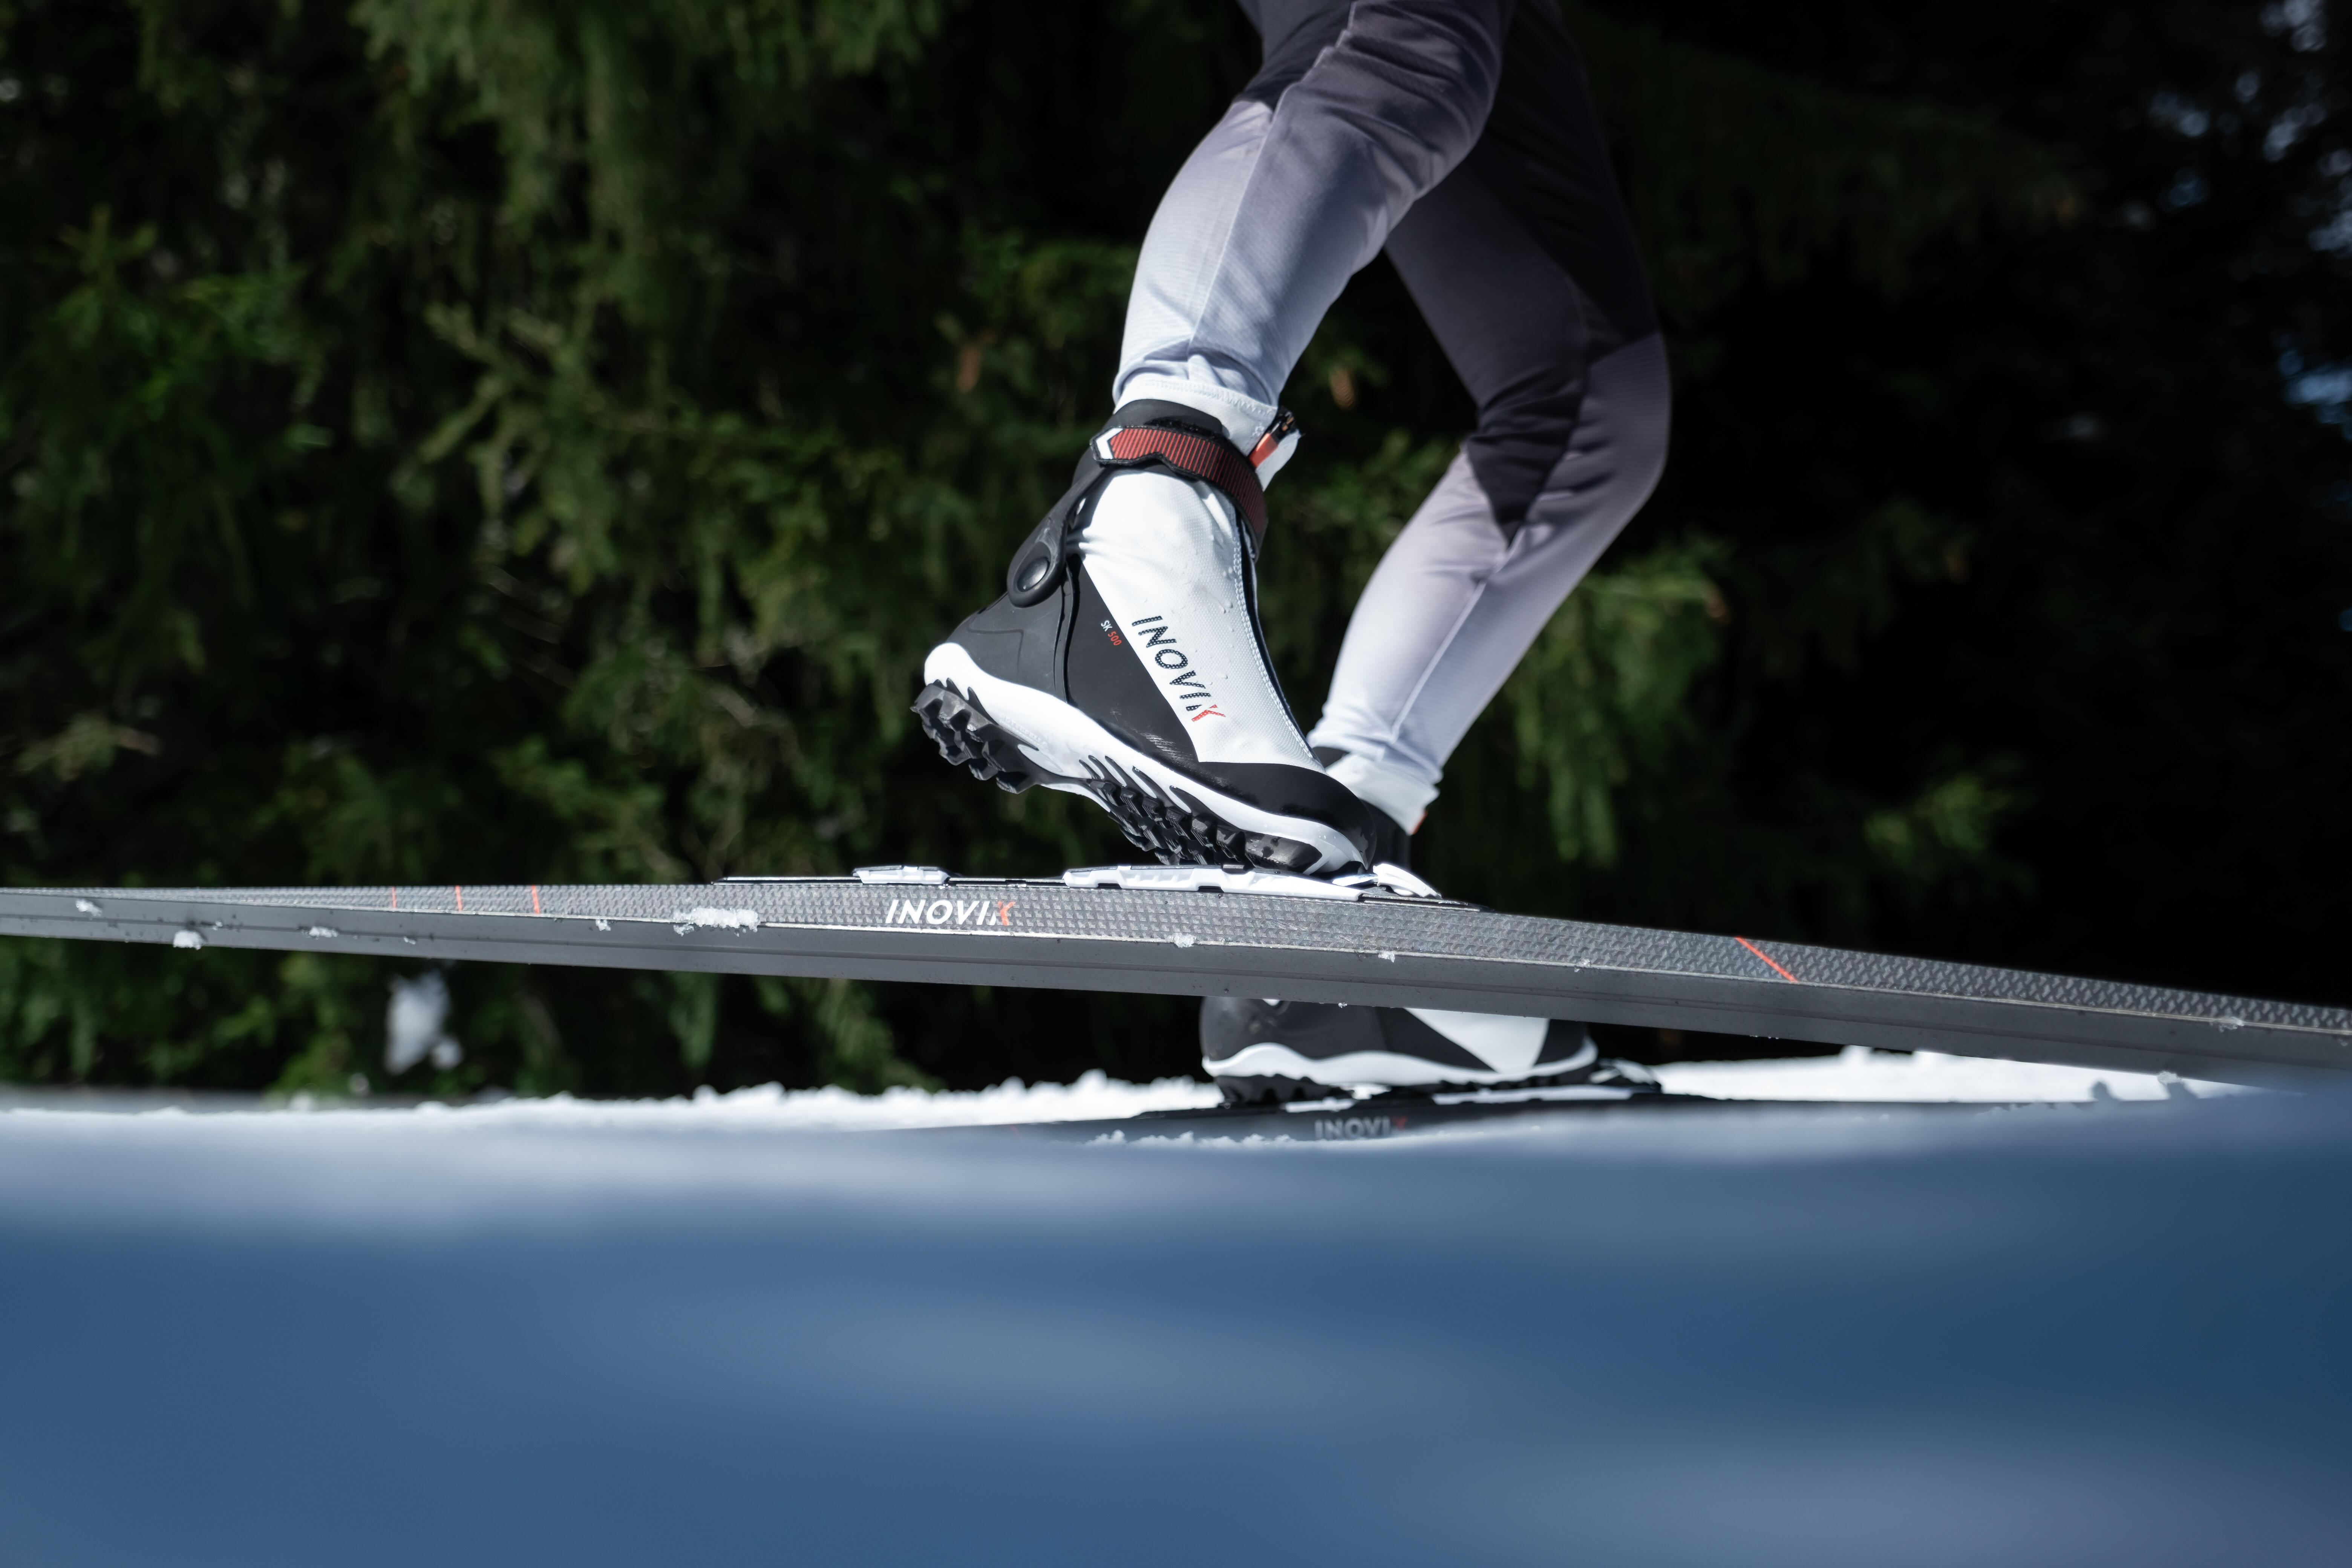 Bottes de ski de fond pas de patin femme – 500 - INOVIK